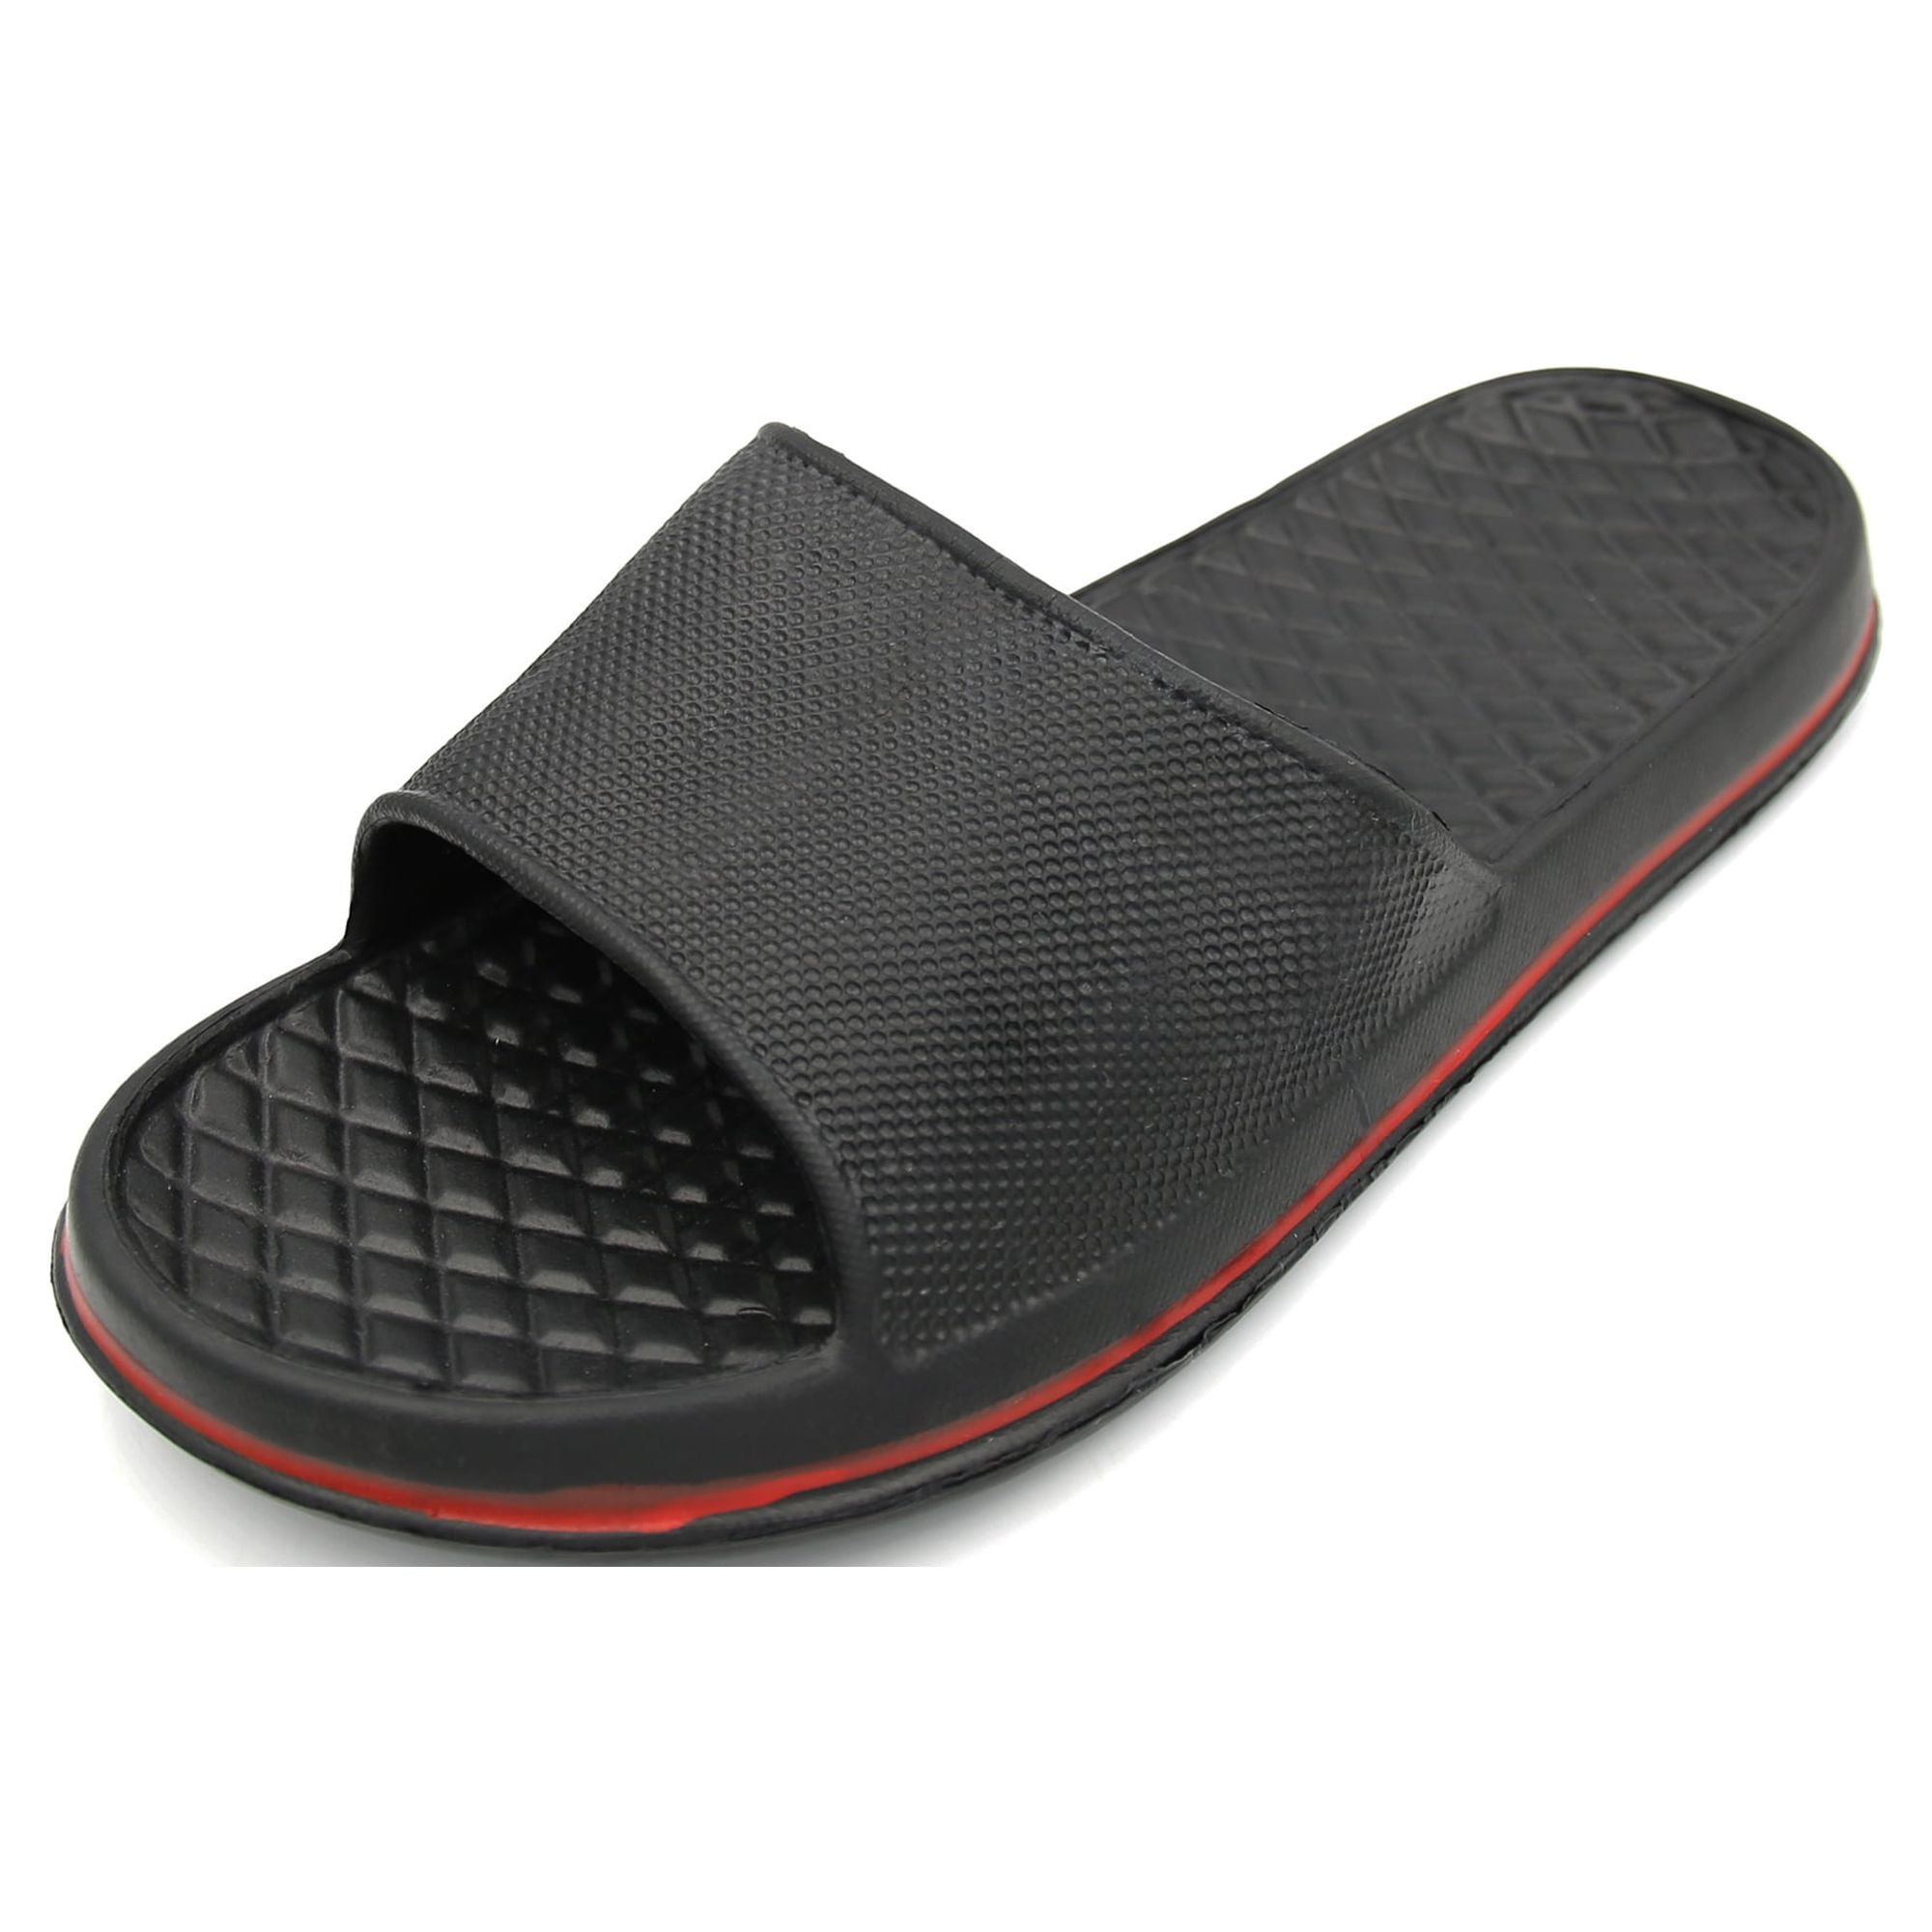 Ventana Men's Slides Athletic Slip On Open Toe Beach Sandals Sports ...